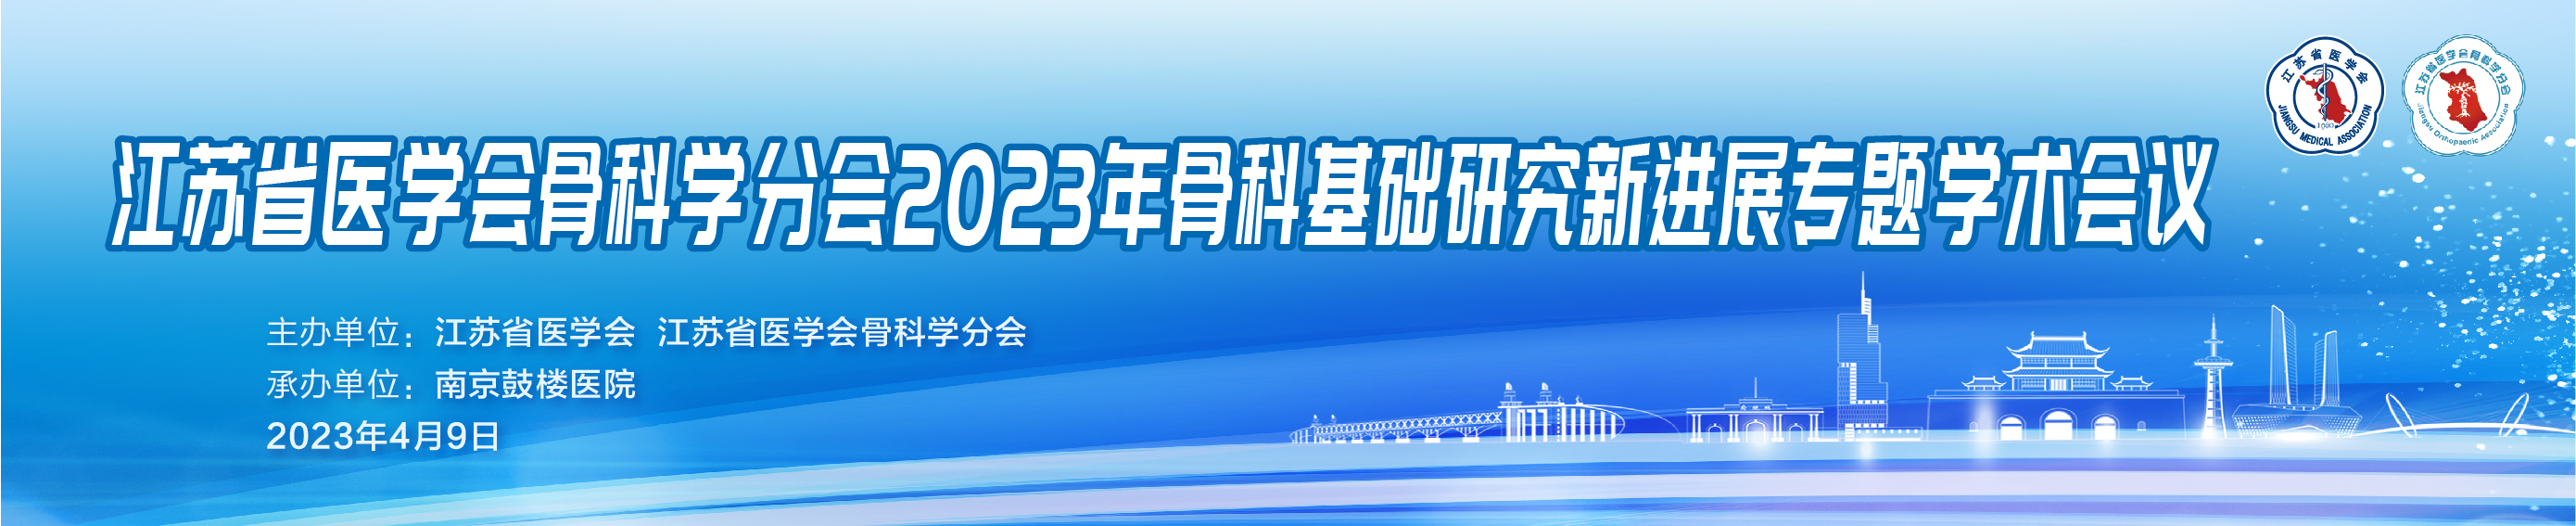 江苏省医学会骨科学分会2023年骨科基础研究新进展专题学术会议